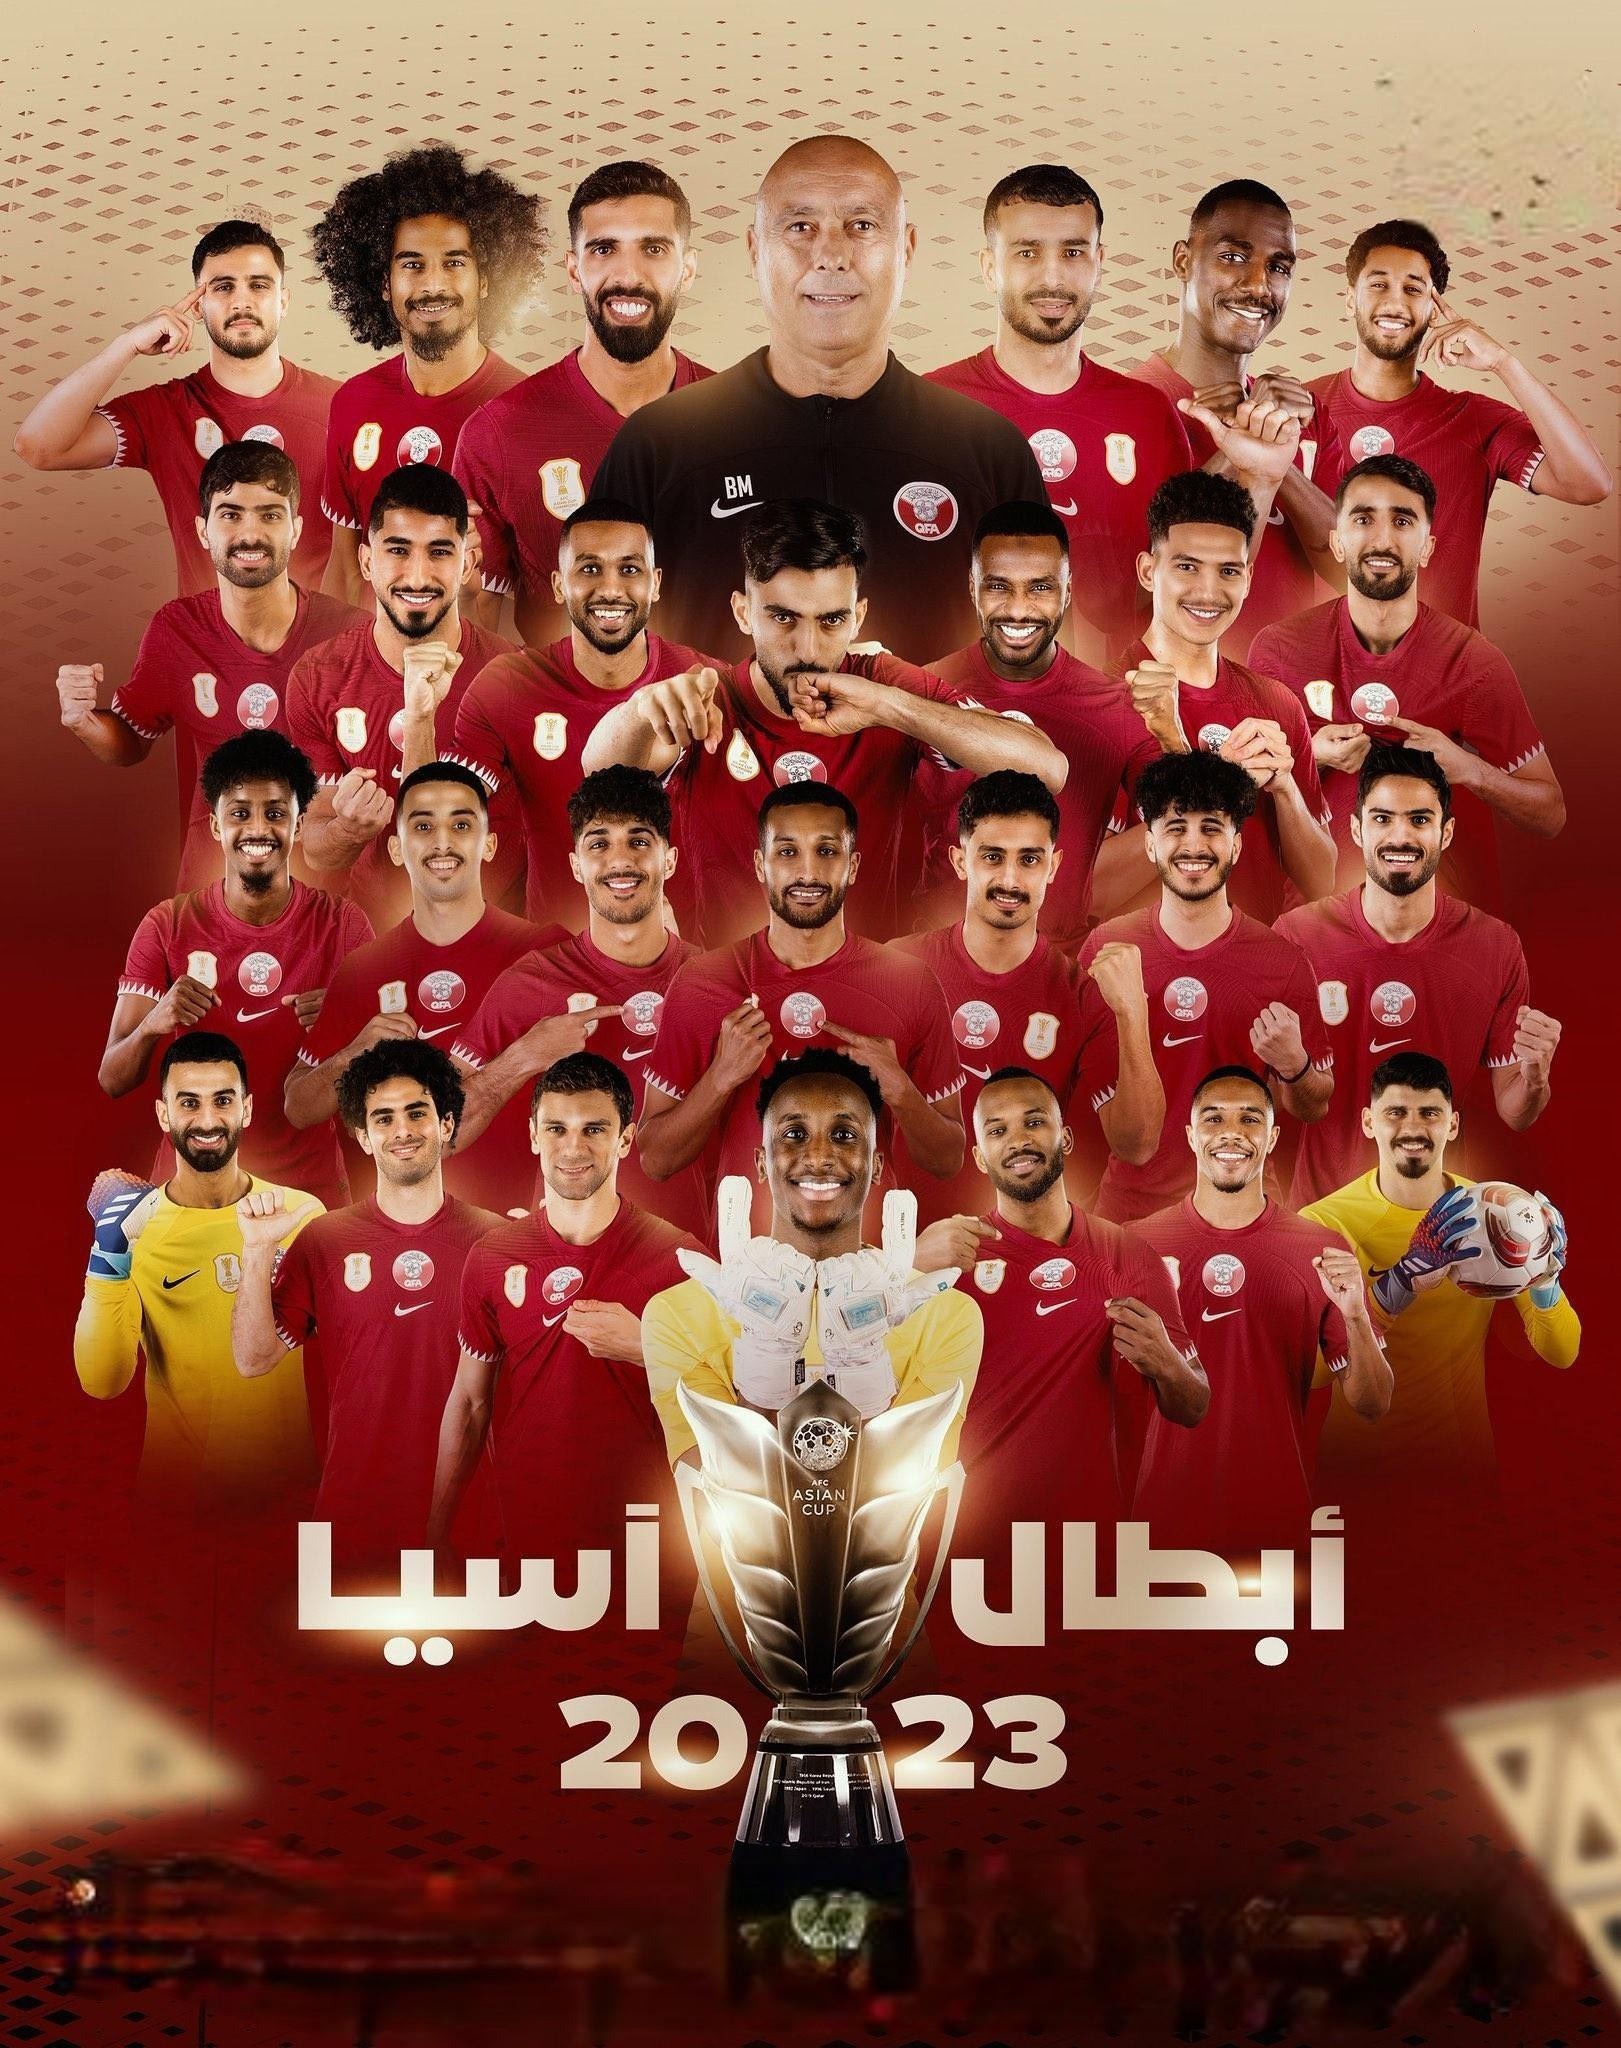 المنتخب القطري بطلاً لكأس آسيا 2023 للمرة الثانية على التوالي بالفوز على الأردن بنتيجة 3-1